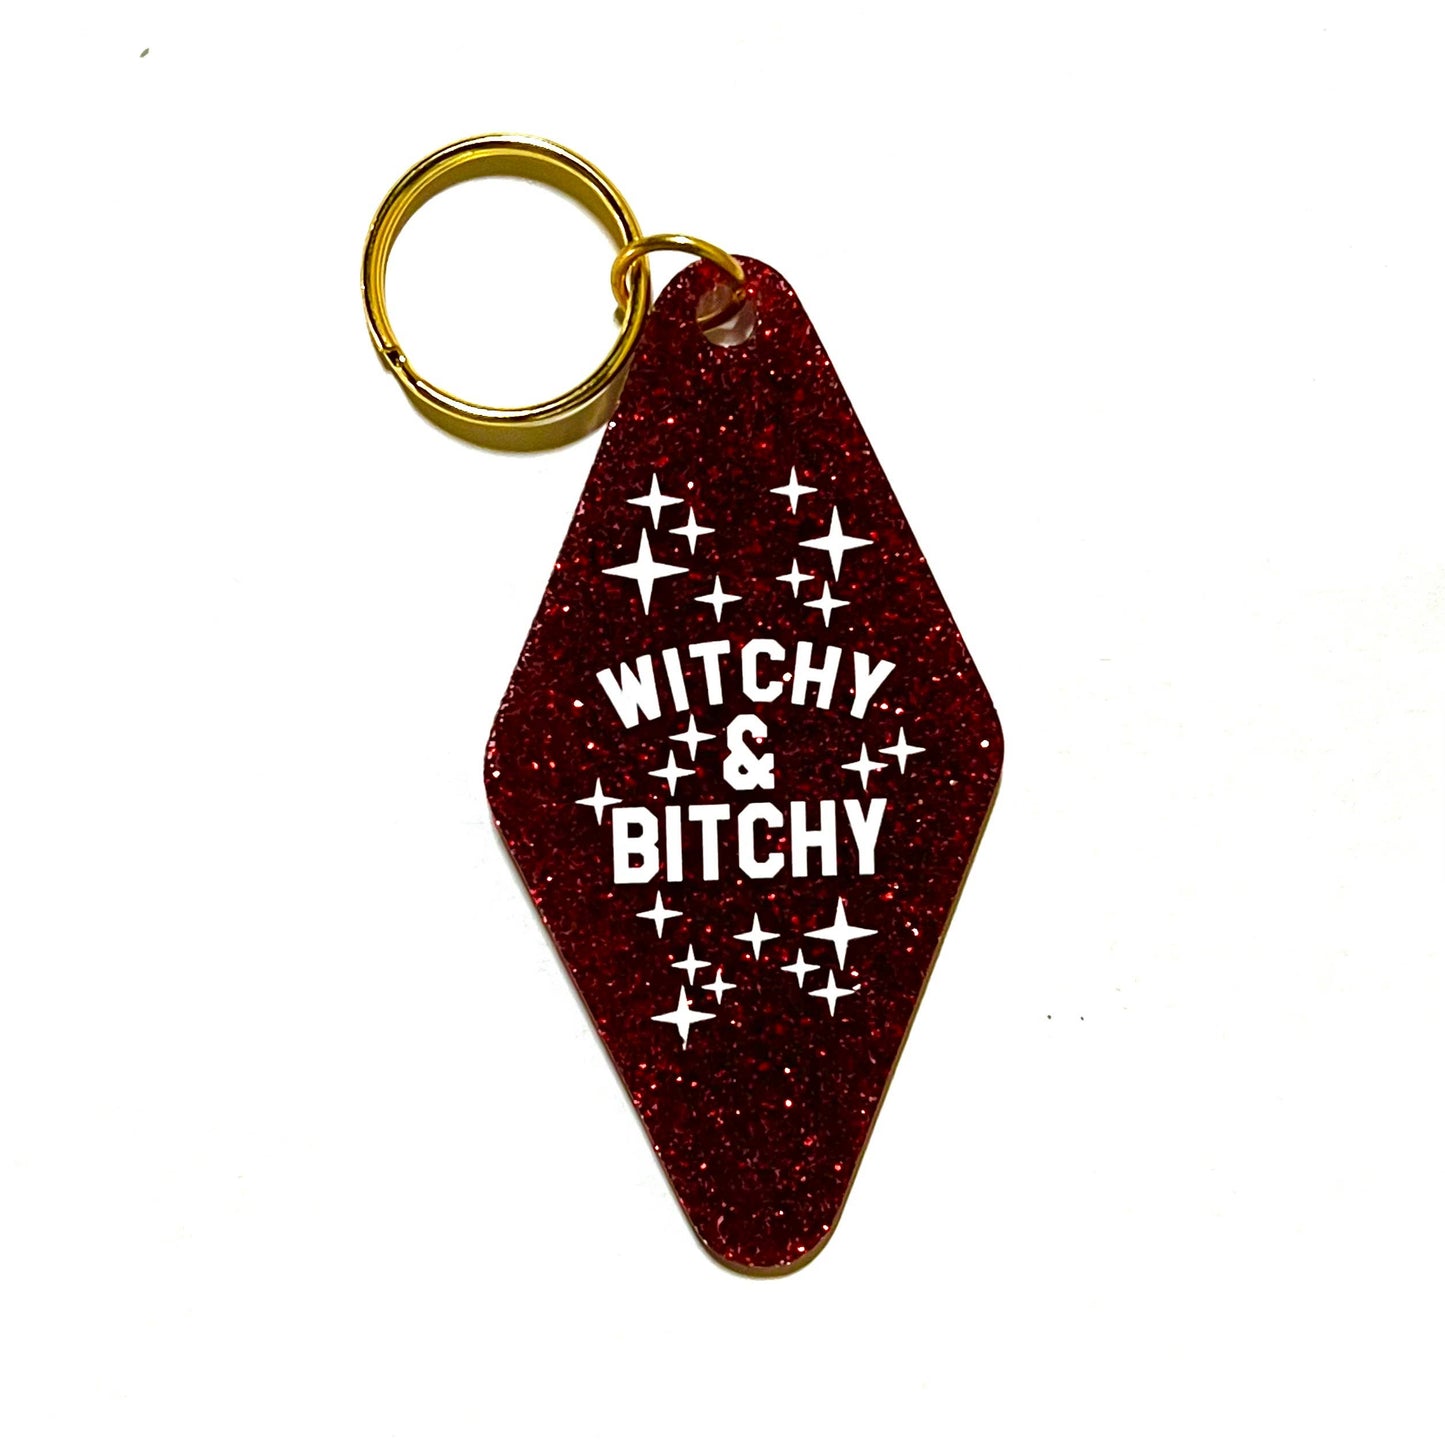 Witchy & Bitchy Keychain